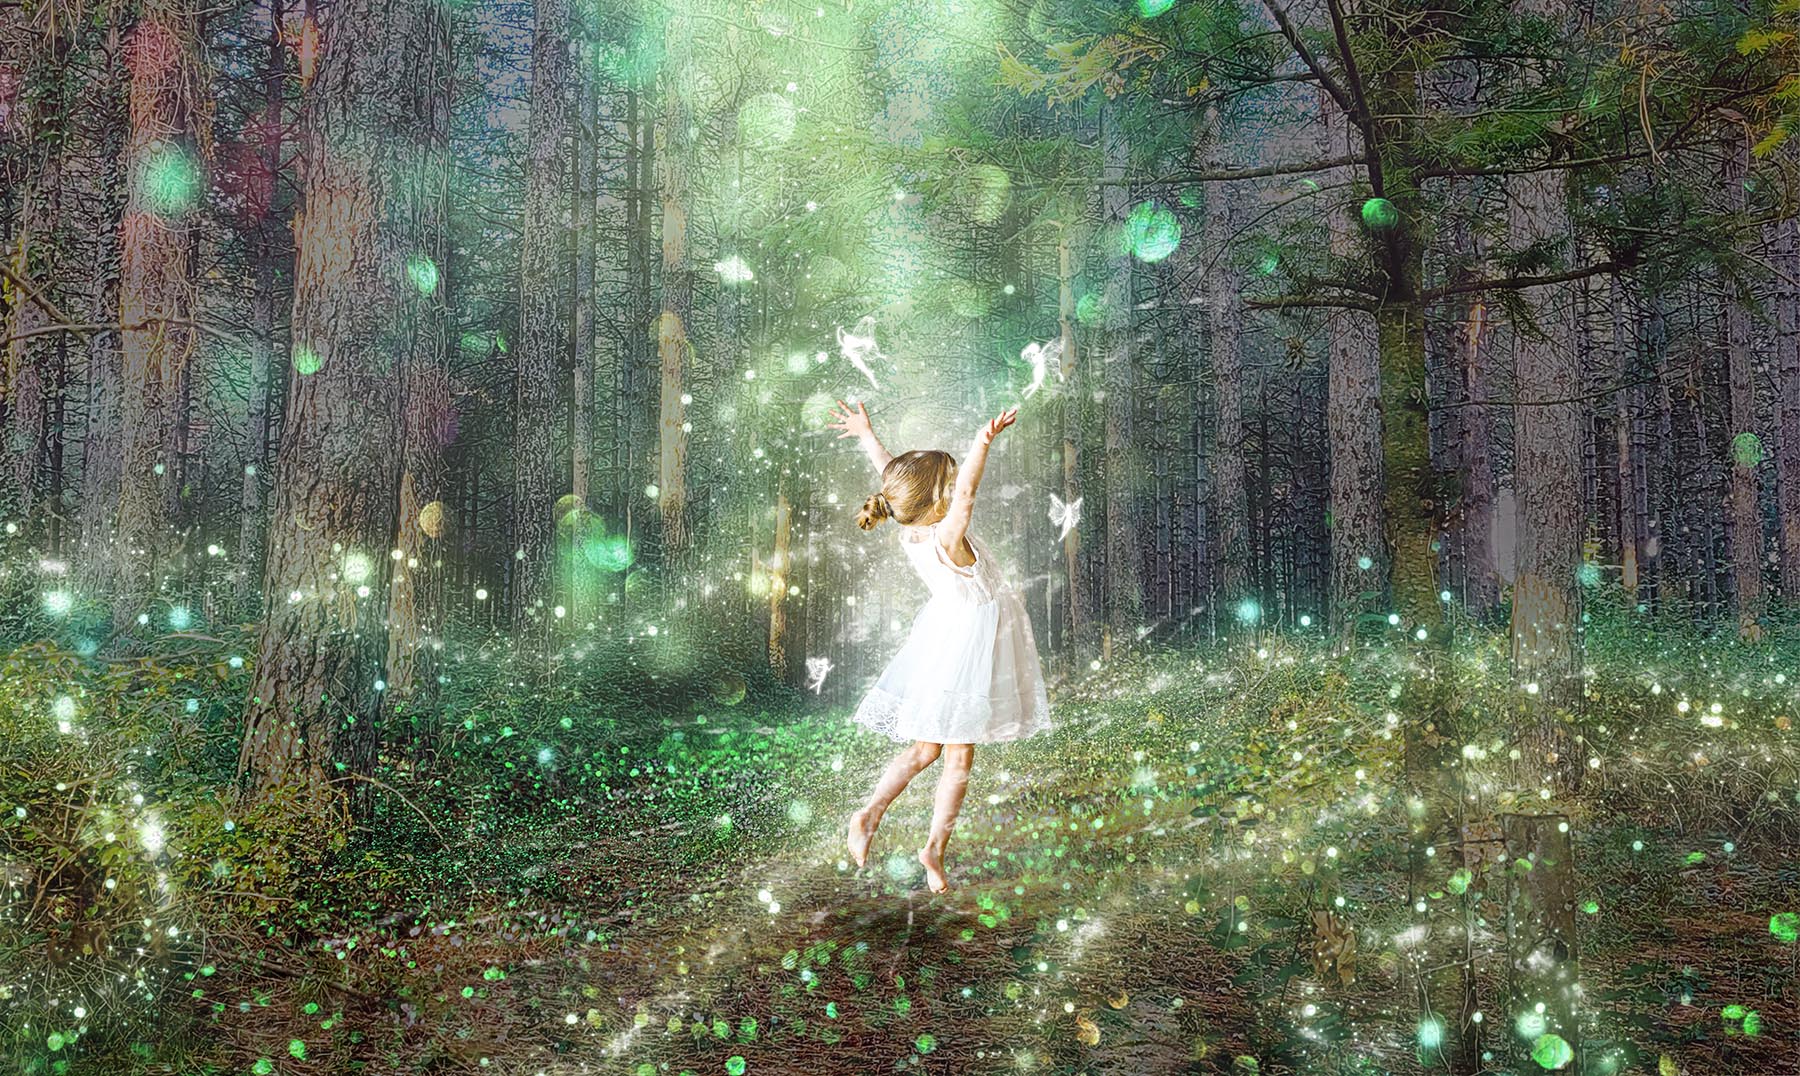 Tableau d'une jeune fille jouant avec des fées dans une forêt